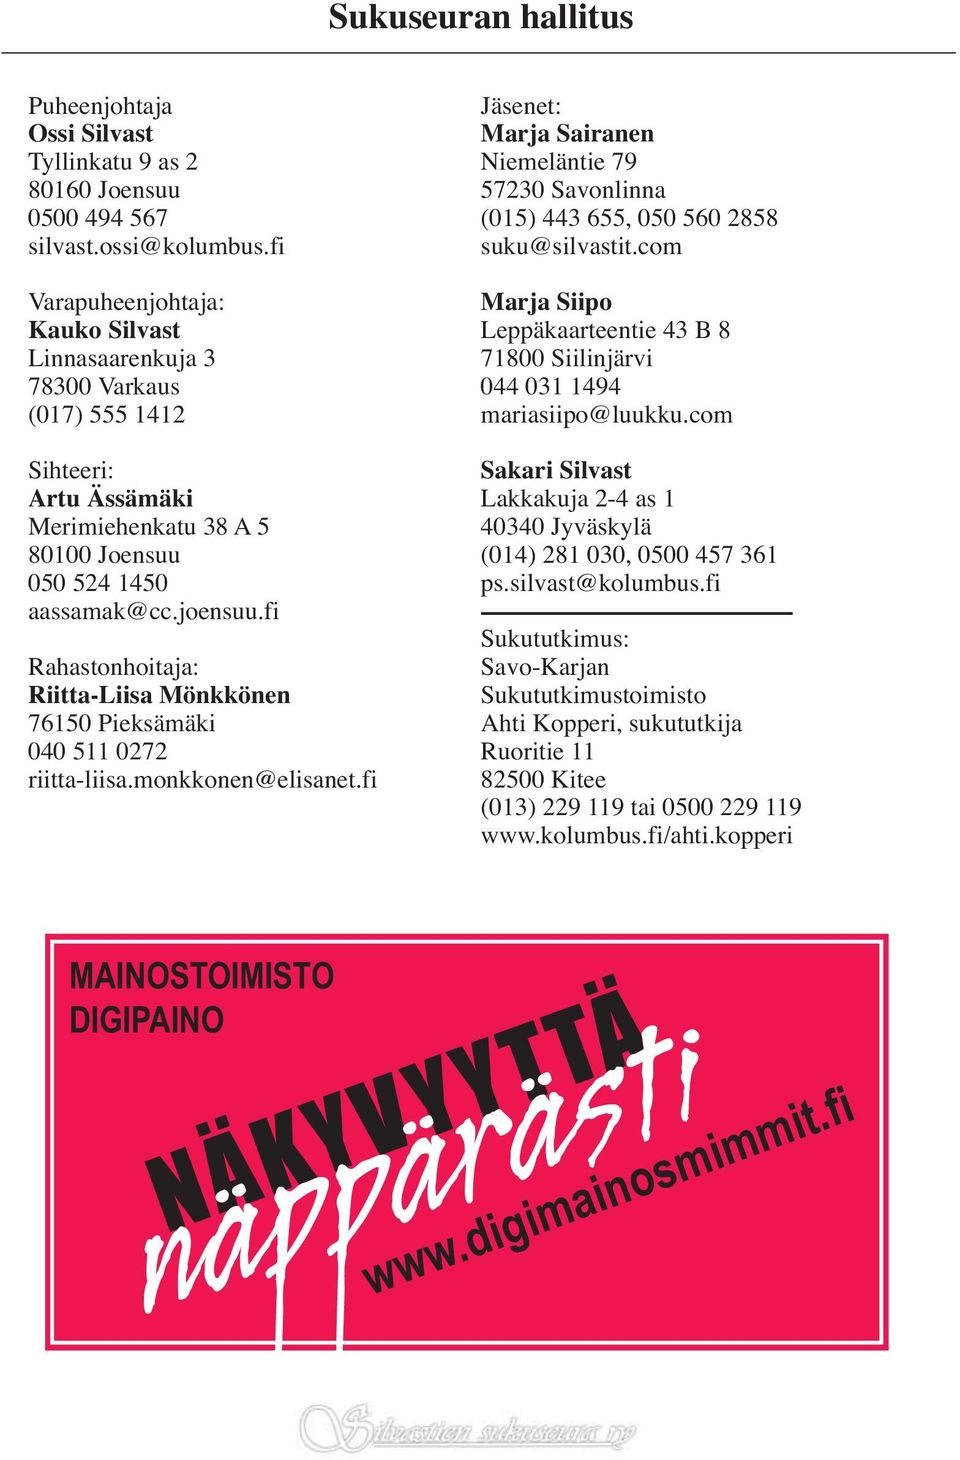 fi Rahastonhoitaja: Riitta-Liisa Mönkkönen 76150 Pieksämäki 040 511 0272 riitta-liisa.monkkonen@elisanet.